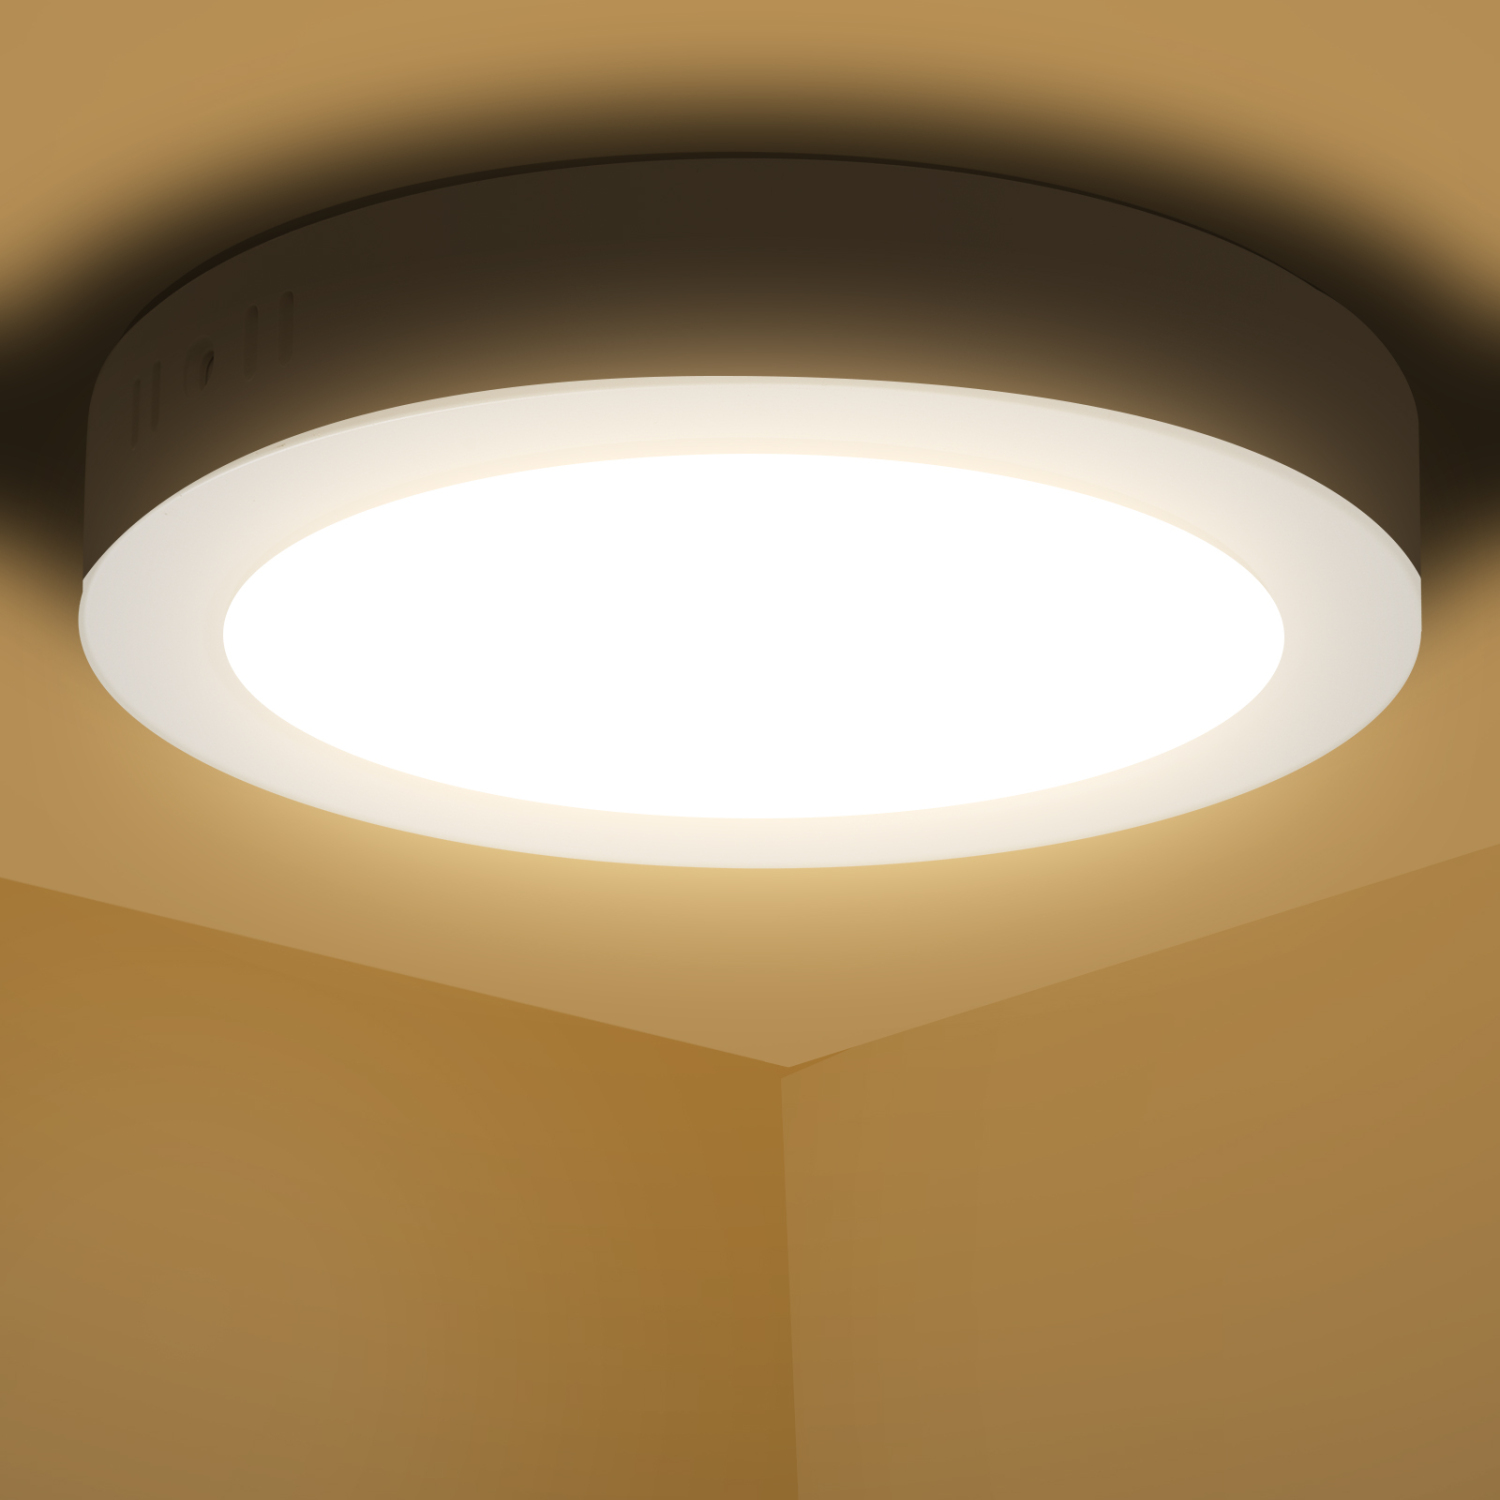 Aigostar Plafoniera LED, 18W Equivalente a 162W, alta luminosità, IP20 1510LM, Lampada da Soffitto per Bagno Cucina Corridoio e Balcone, Plafoniera dritta 3000K Luce Bianca Calda, Ø22.6cm